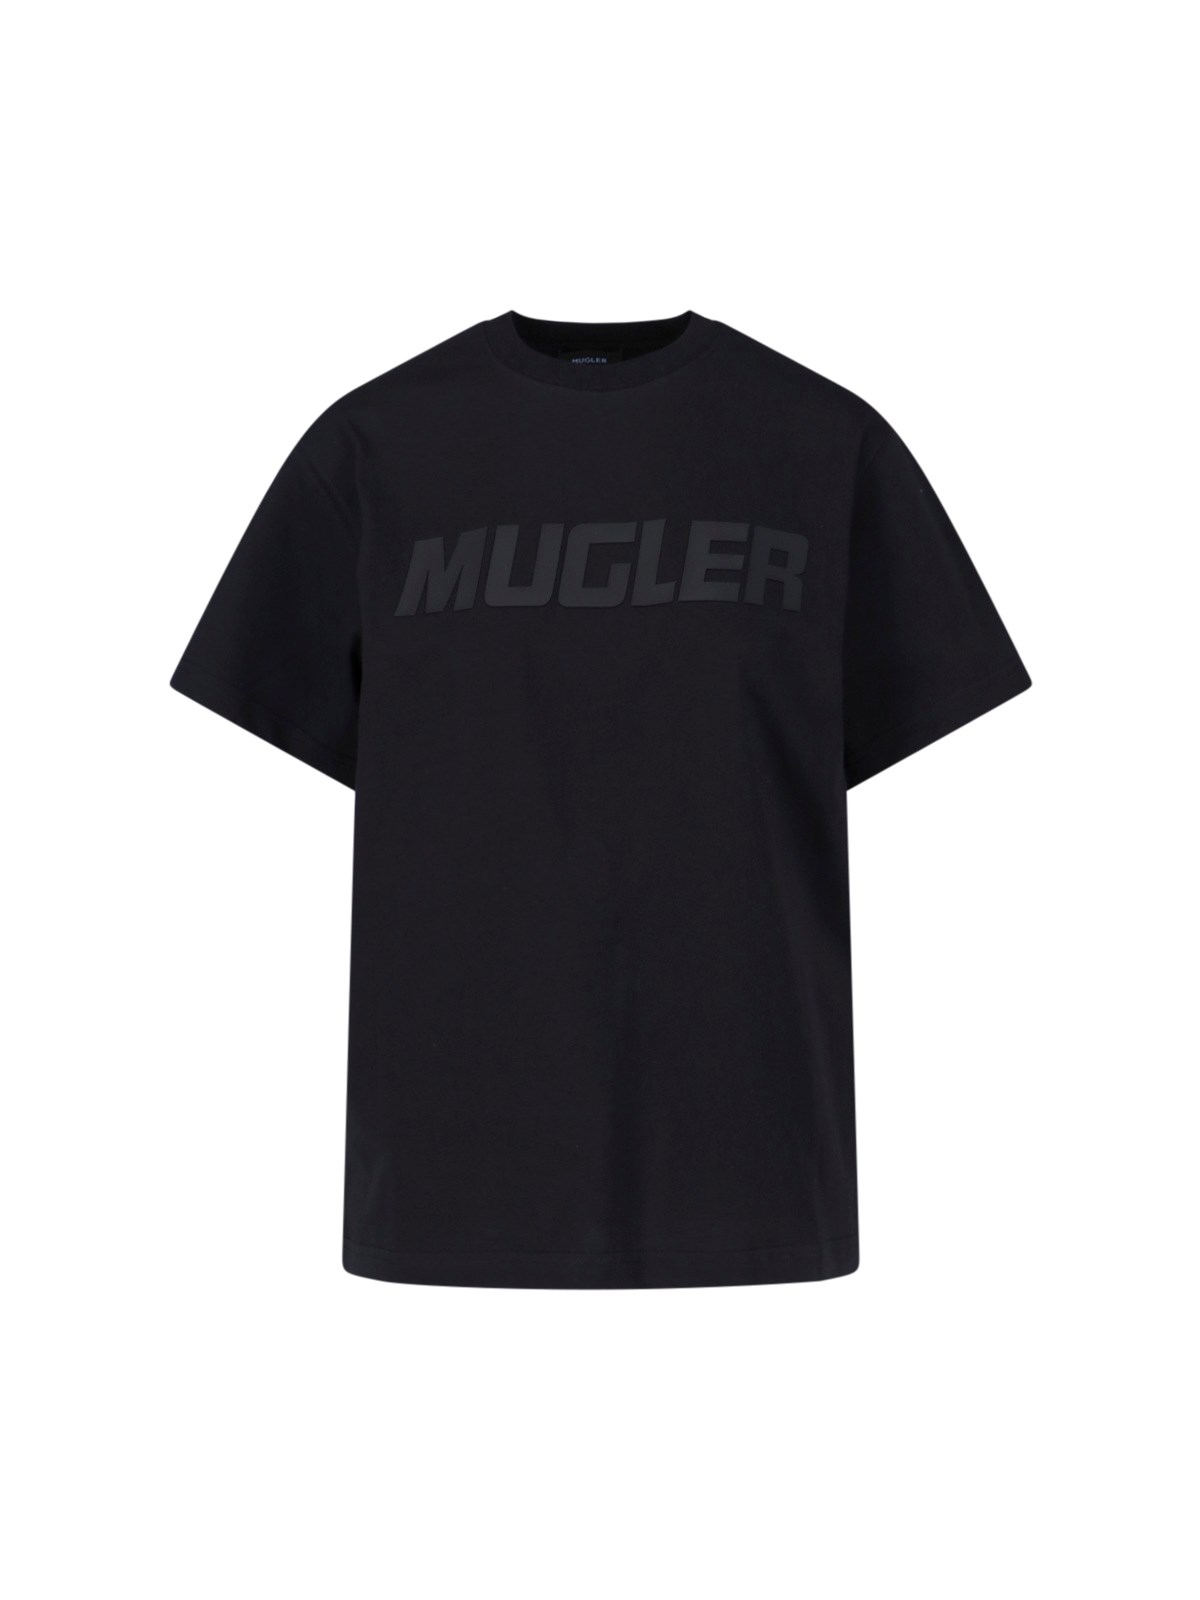 Mugler LEGGINGS Clothing in Black